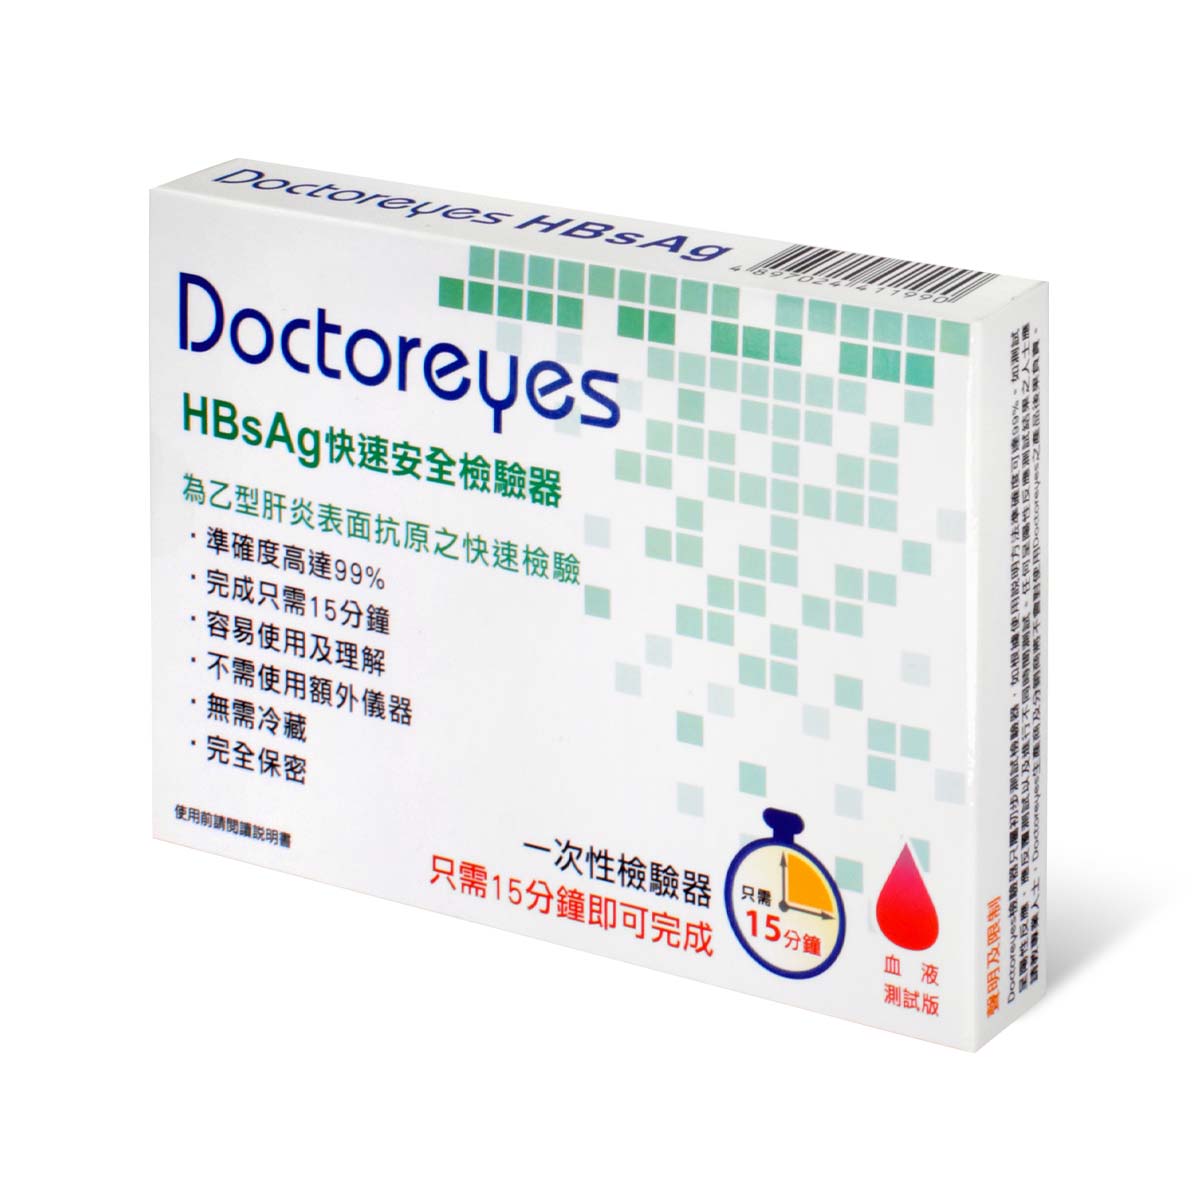 Doctoreyes Hepatitis B (HBsAg) Rapid Test Kit-p_1